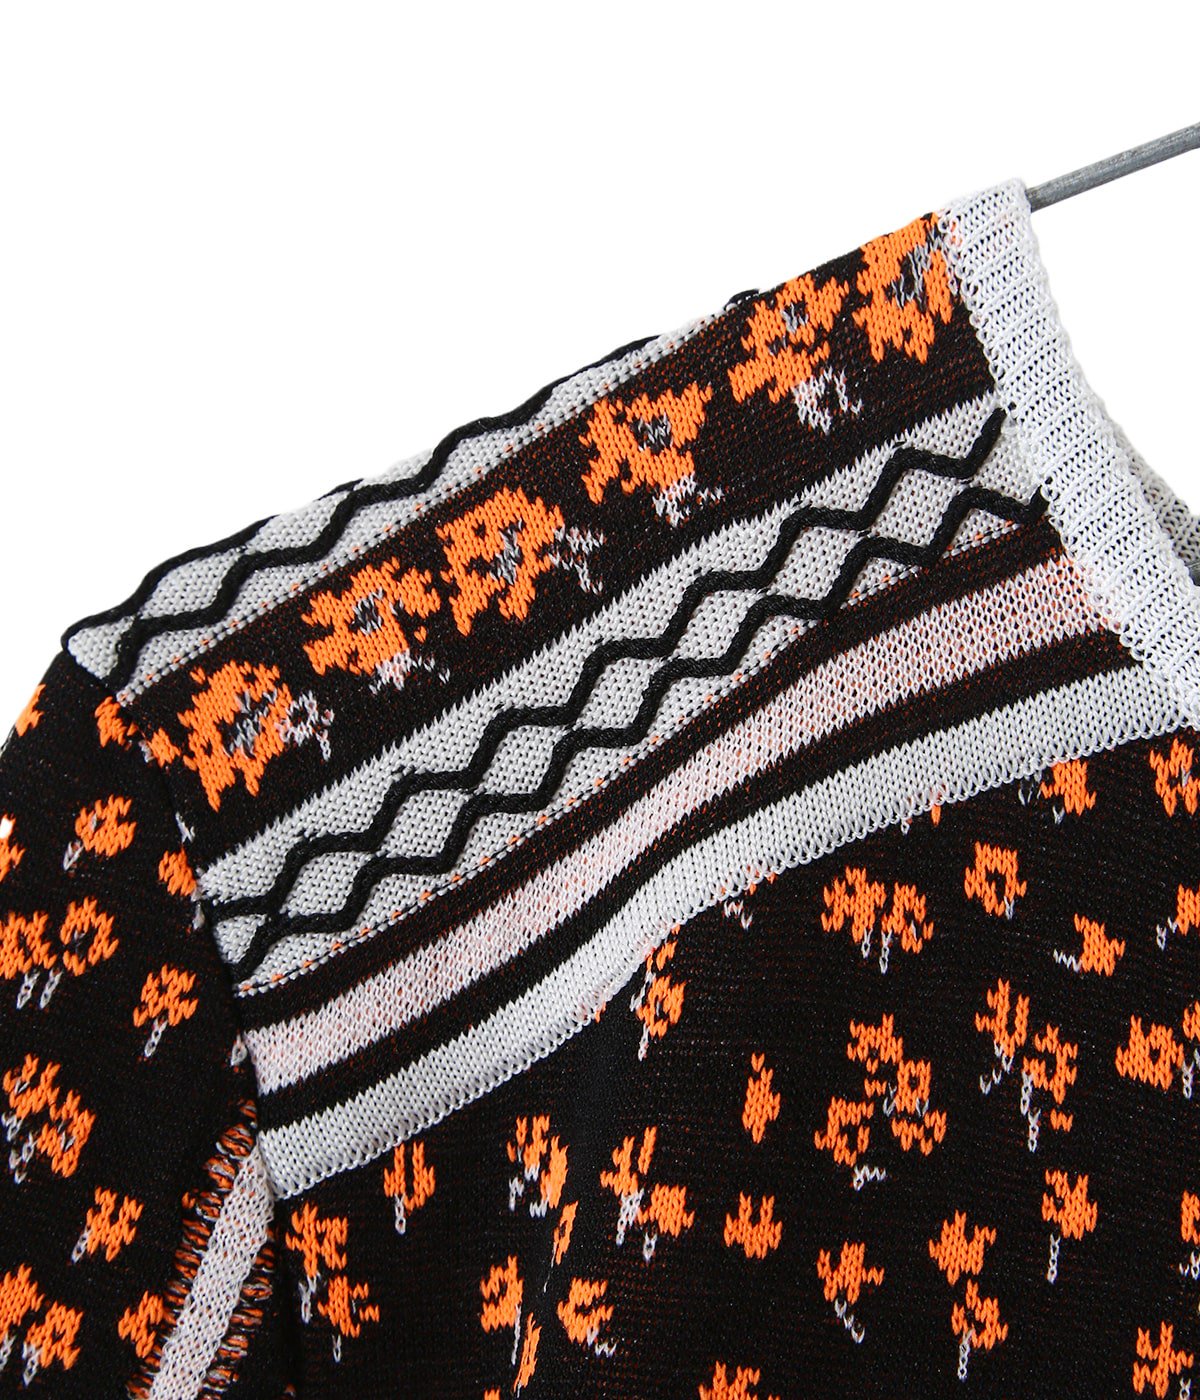 新品未読品 Osmanthus Motif Jacquard Knitted Dress 696a78b9 【☆安心の定価販売☆】  -mios.co.jp